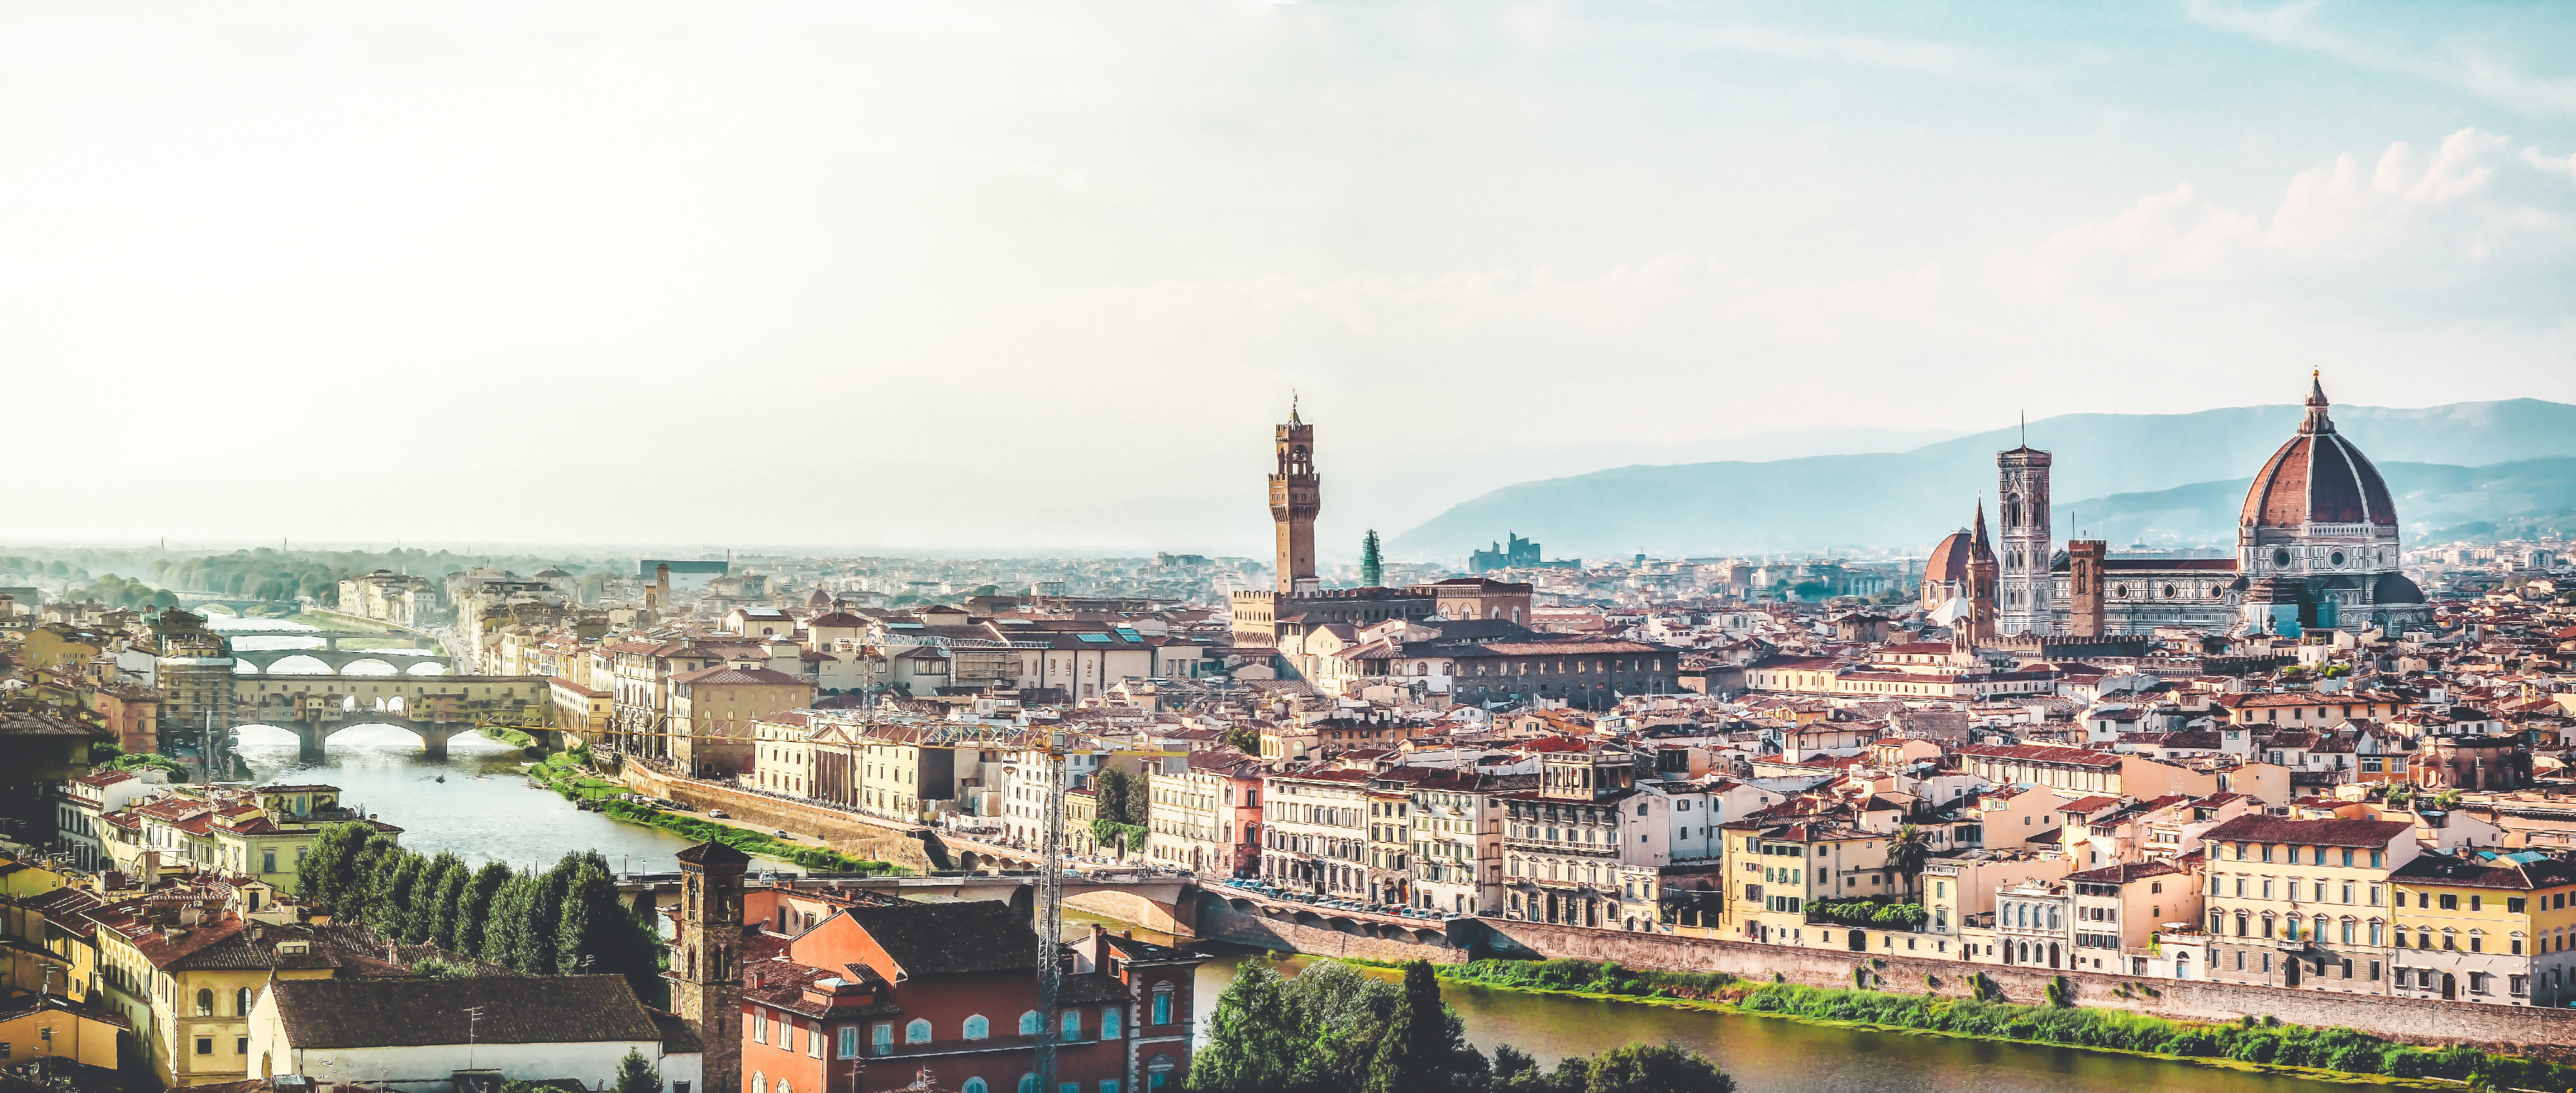 Панорамный вид Флоренции